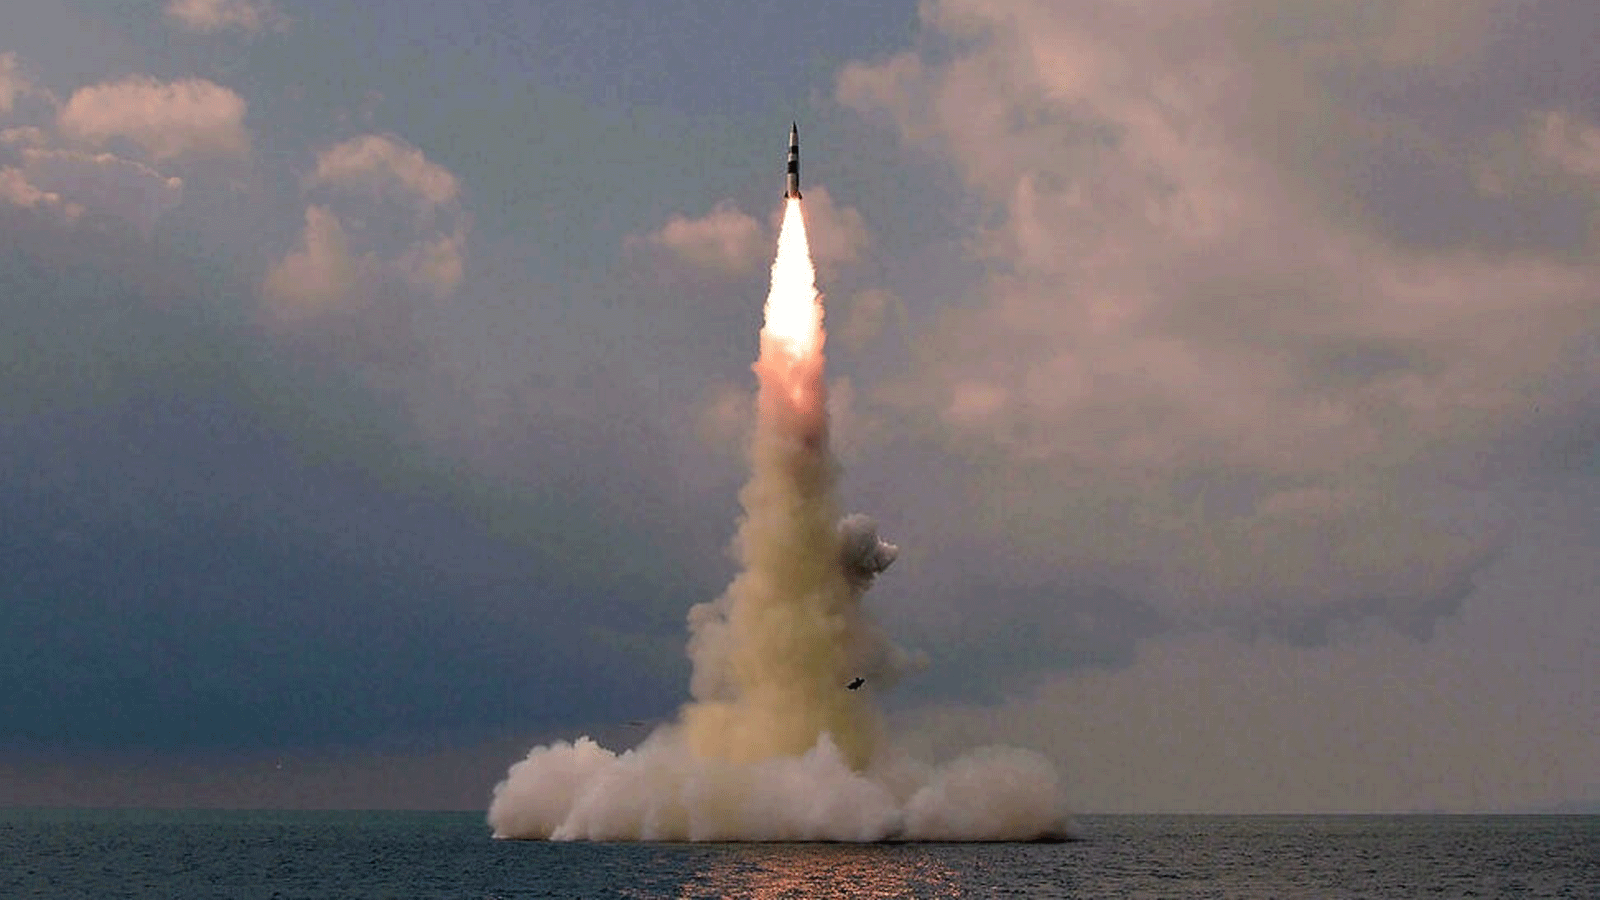 صاروخ باليستي من نوعٍ جديد أطلقته غواصة في مكانٍ غير معروف في 19تشرين الأول/أكتوبر 2021، ووزعت صورته وكالة الأنباء المركزية الكورية الرسمية في كوريا الشمالية (KCNA) في 20 تشرين الأول/أكتوبر 2021 